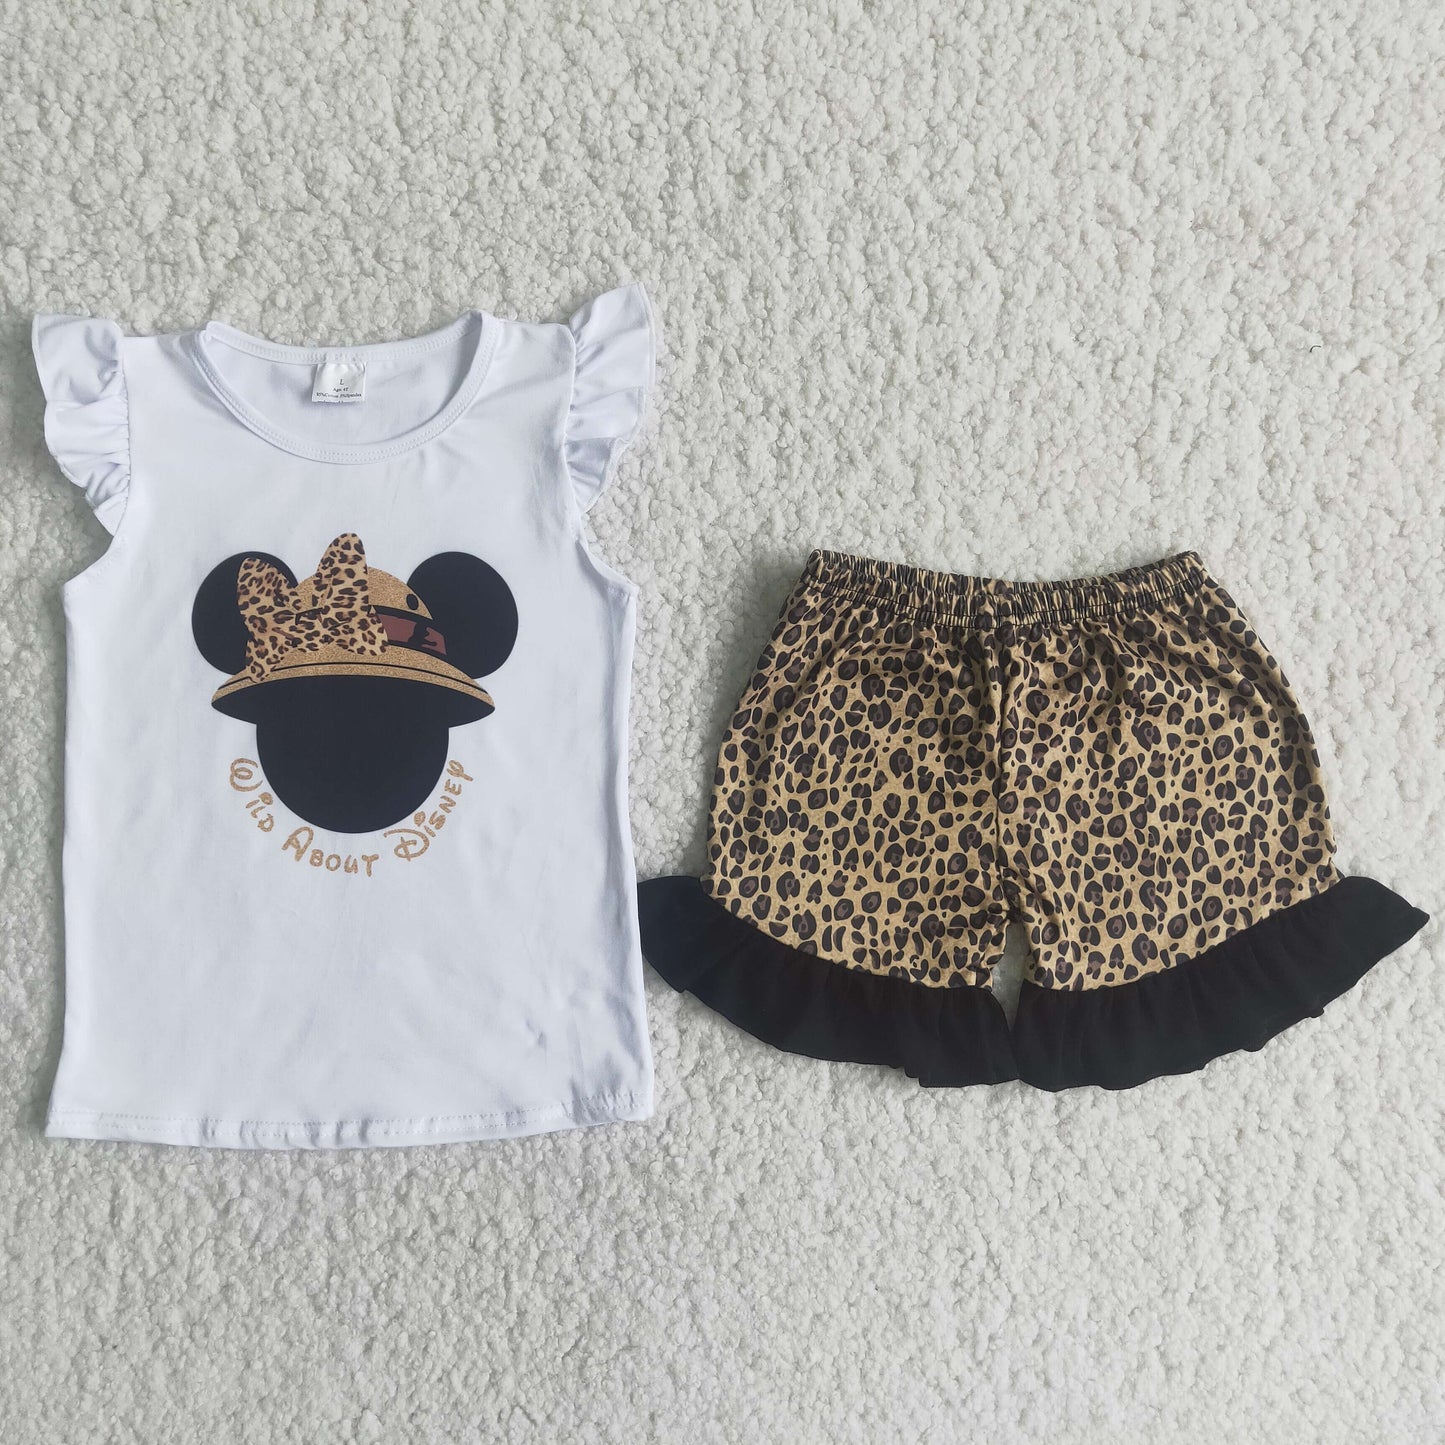 mouse shirt leopard shorts set girls clothing